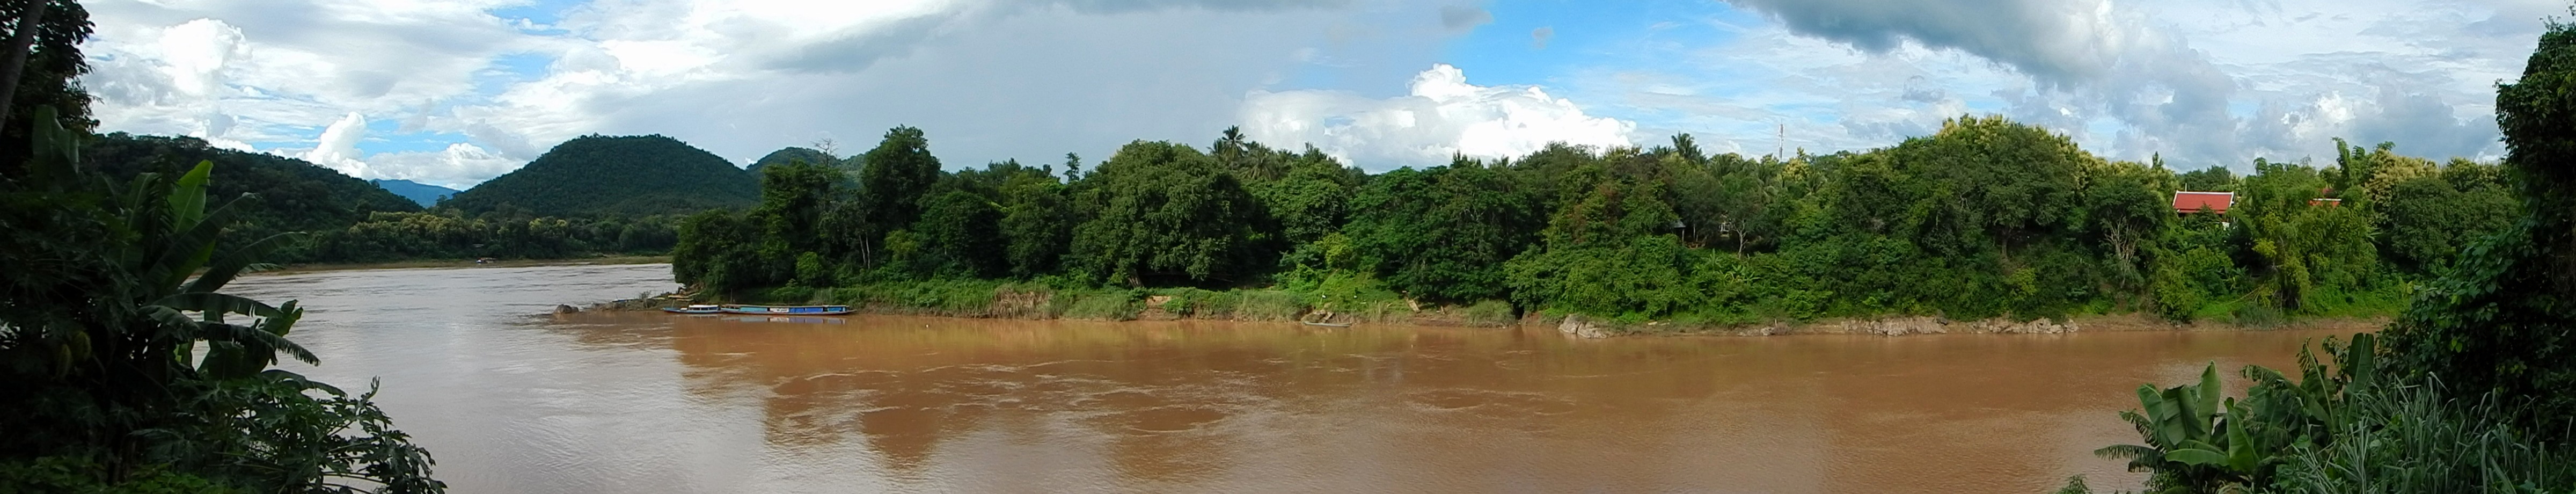 La curva del Nam Khan antes de desembocar en el Mekong